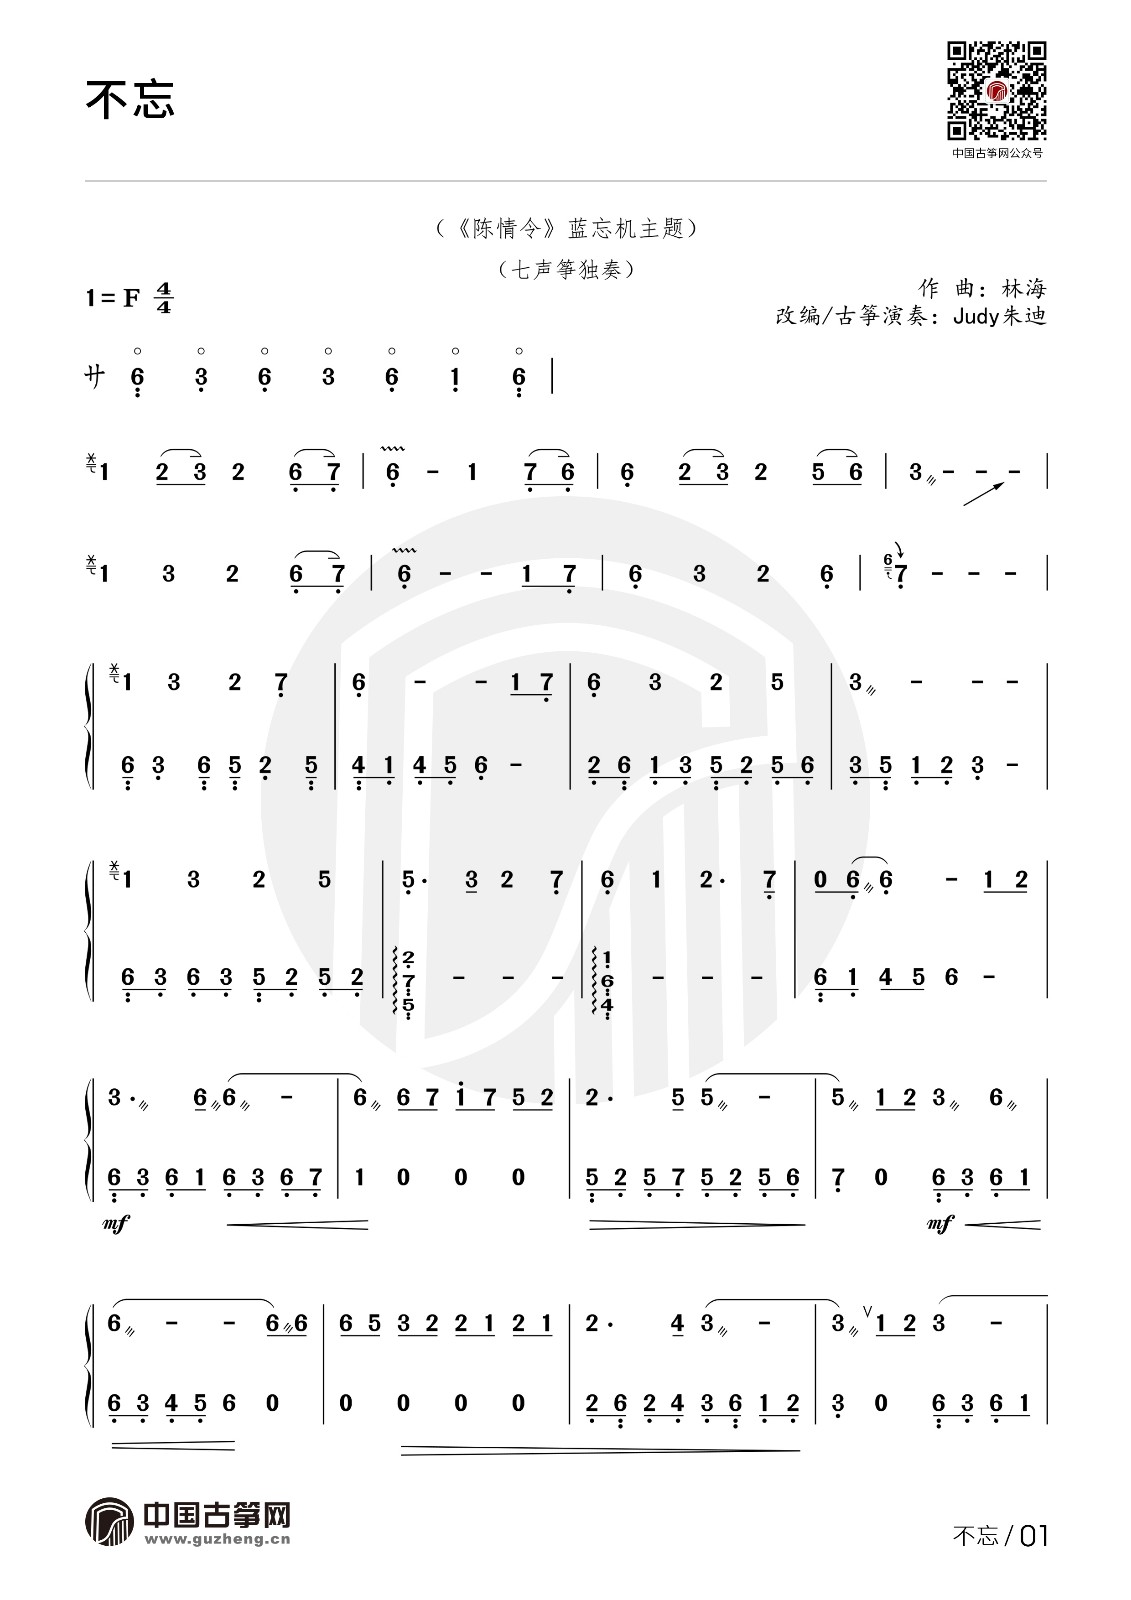 意难平 (陈情令)钢琴谱简易版-银临-陈情令-c调-虫虫钢琴